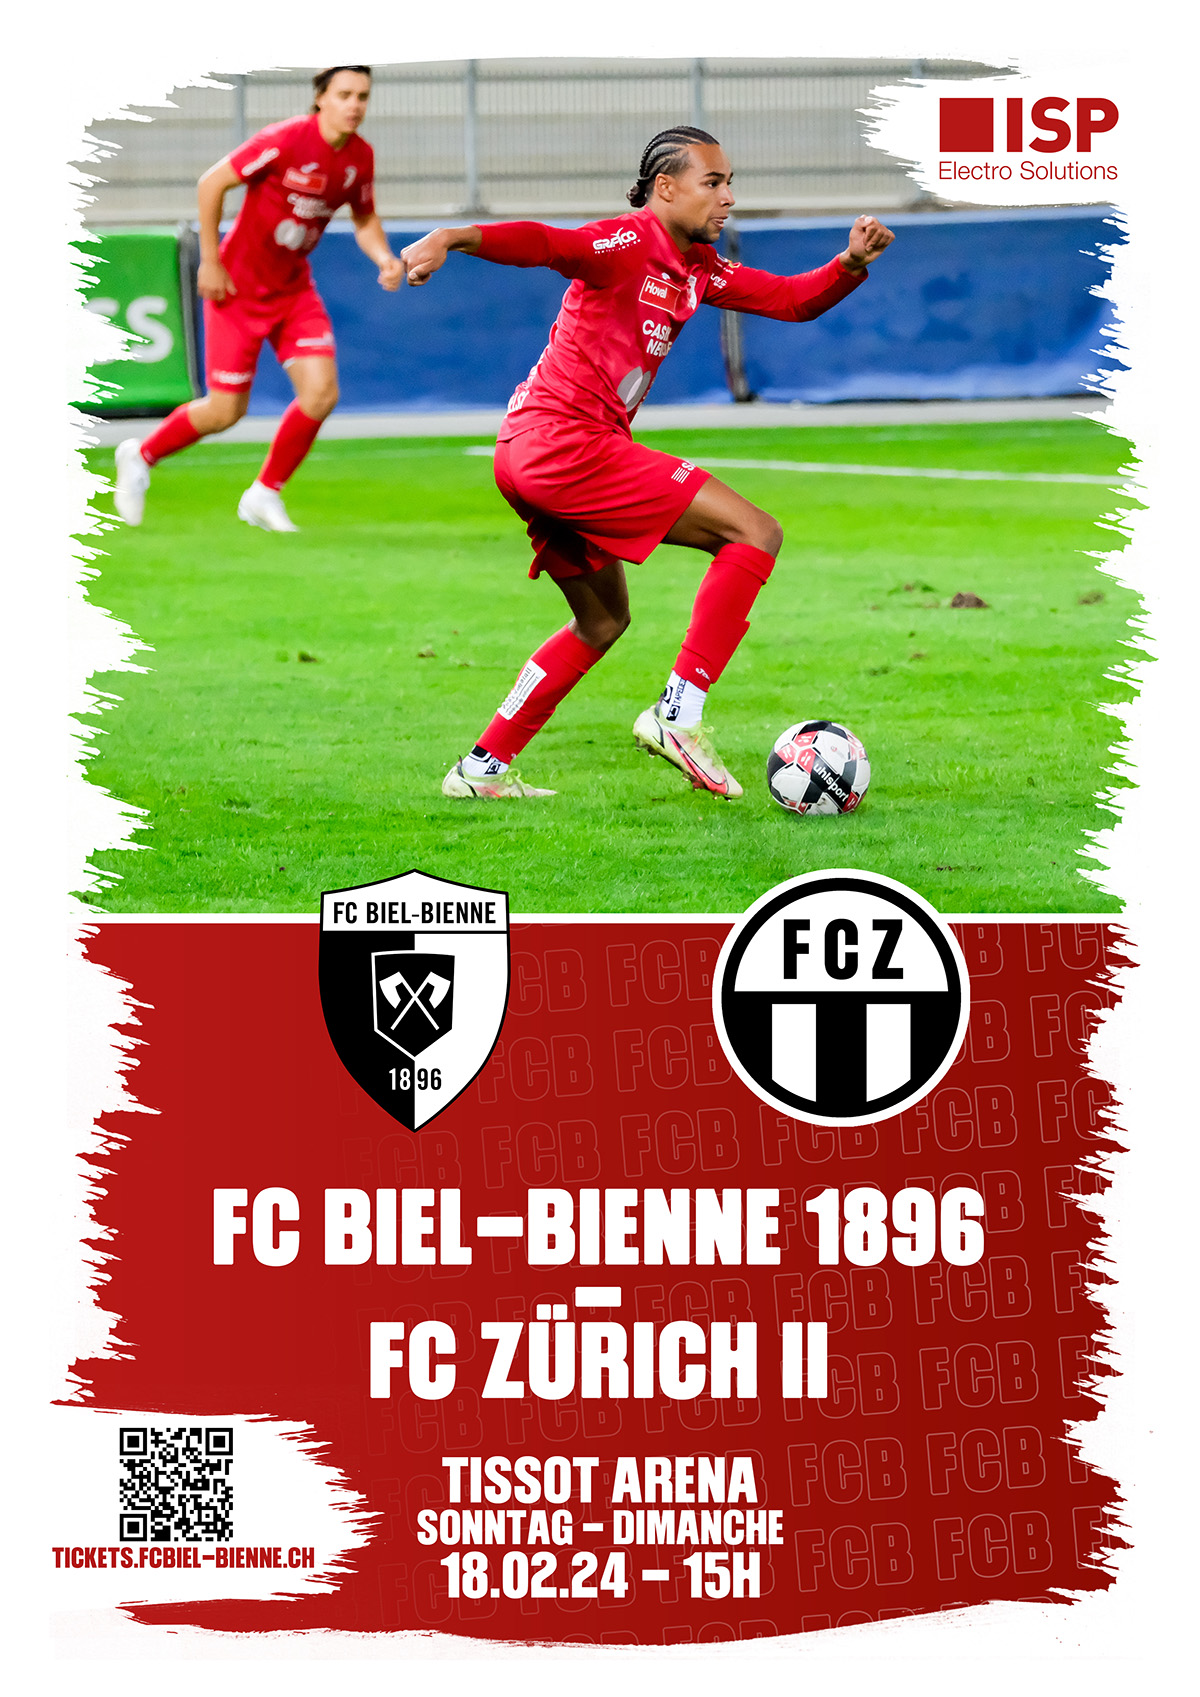 Willkommen dem Nachwuchs des FC Zürich, seinen Fans und allen Anhängern des FC Biel-Bienne 1896